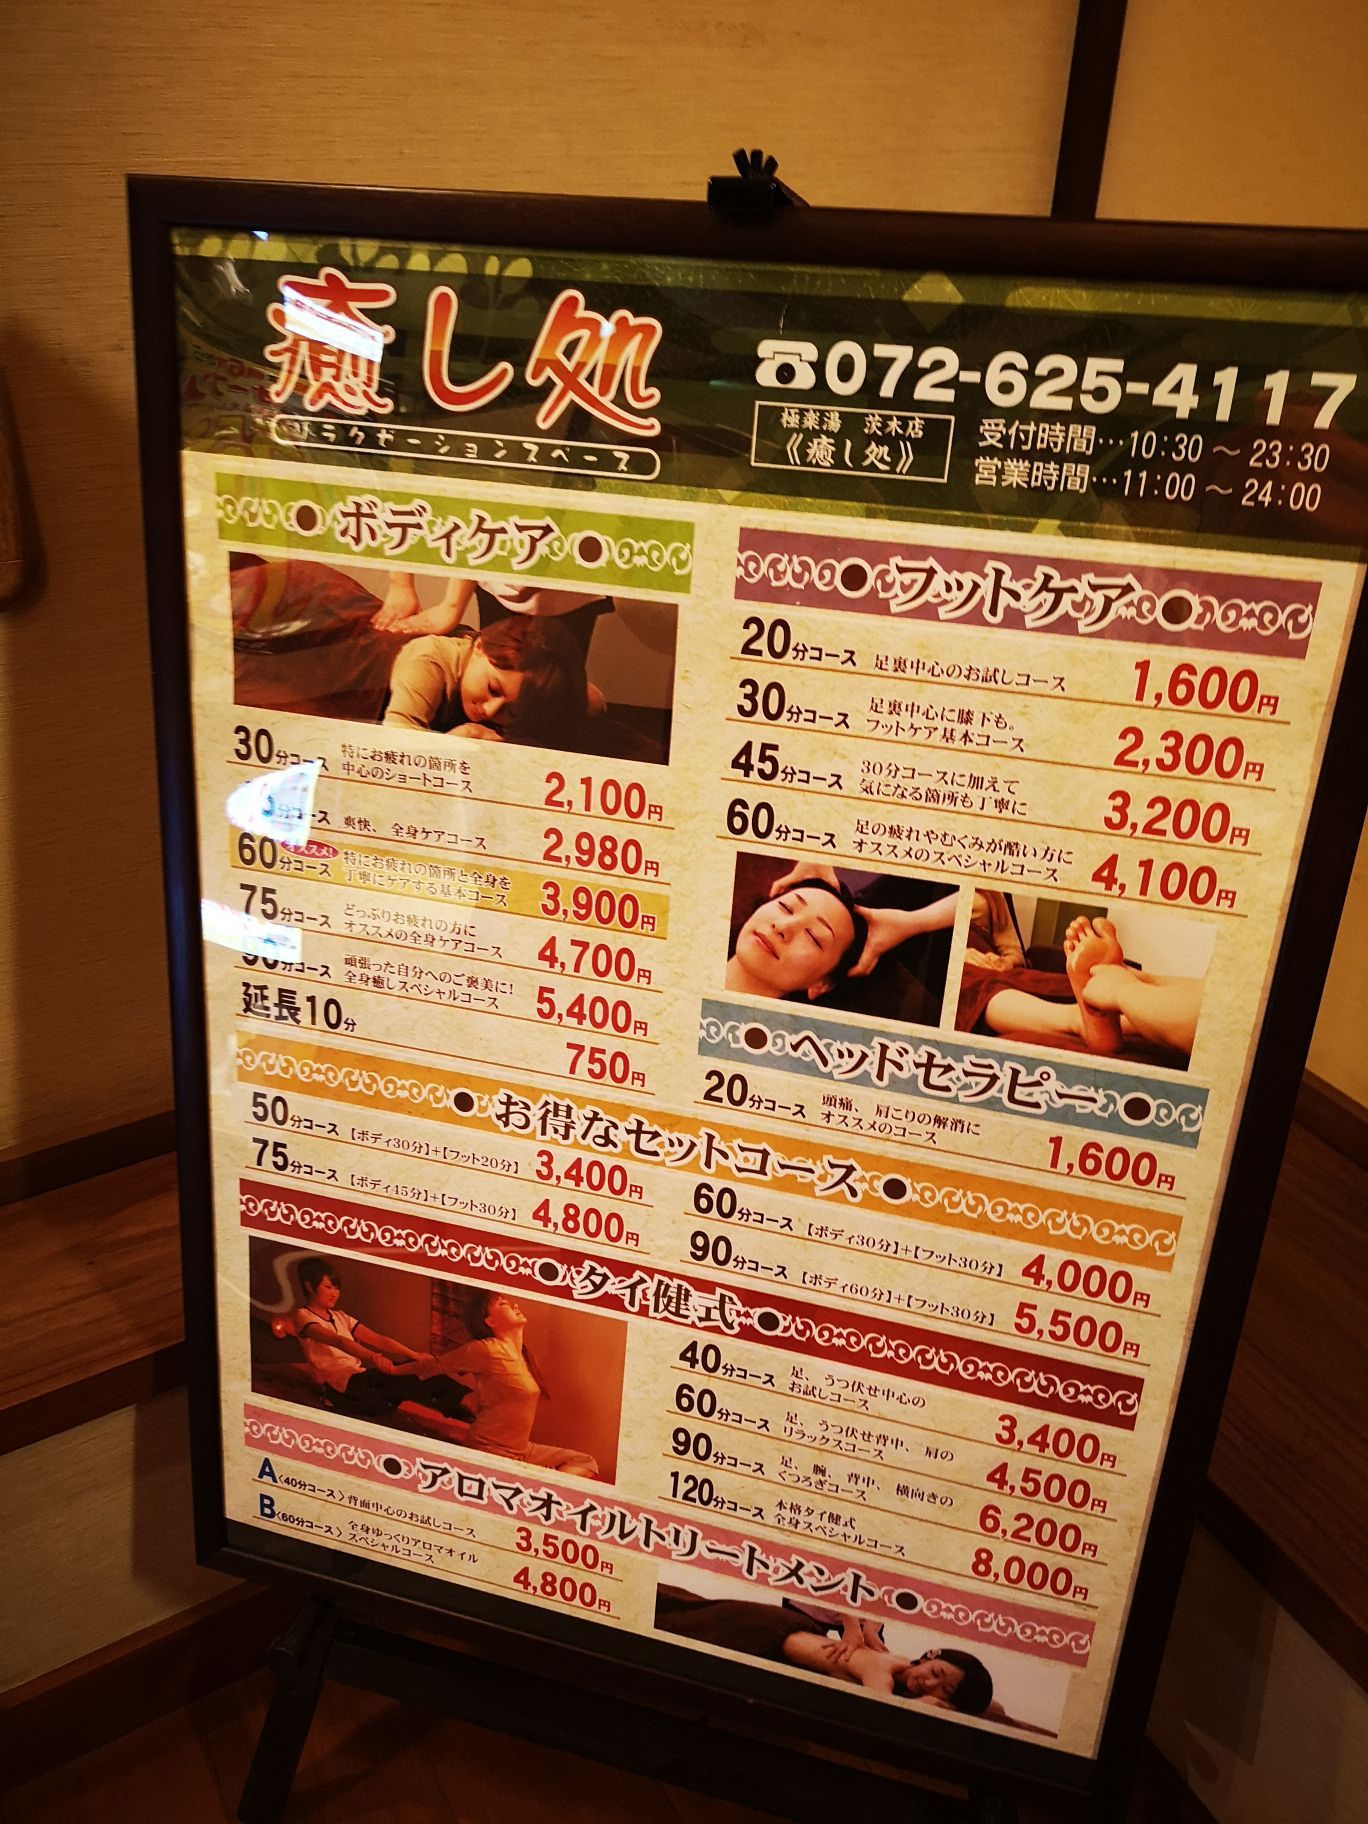 极乐汤是日本本土温泉连锁店，在全国好多地方都有店，这家位于大阪县茨木市的主打的是高浓度碳酸泉水。门票